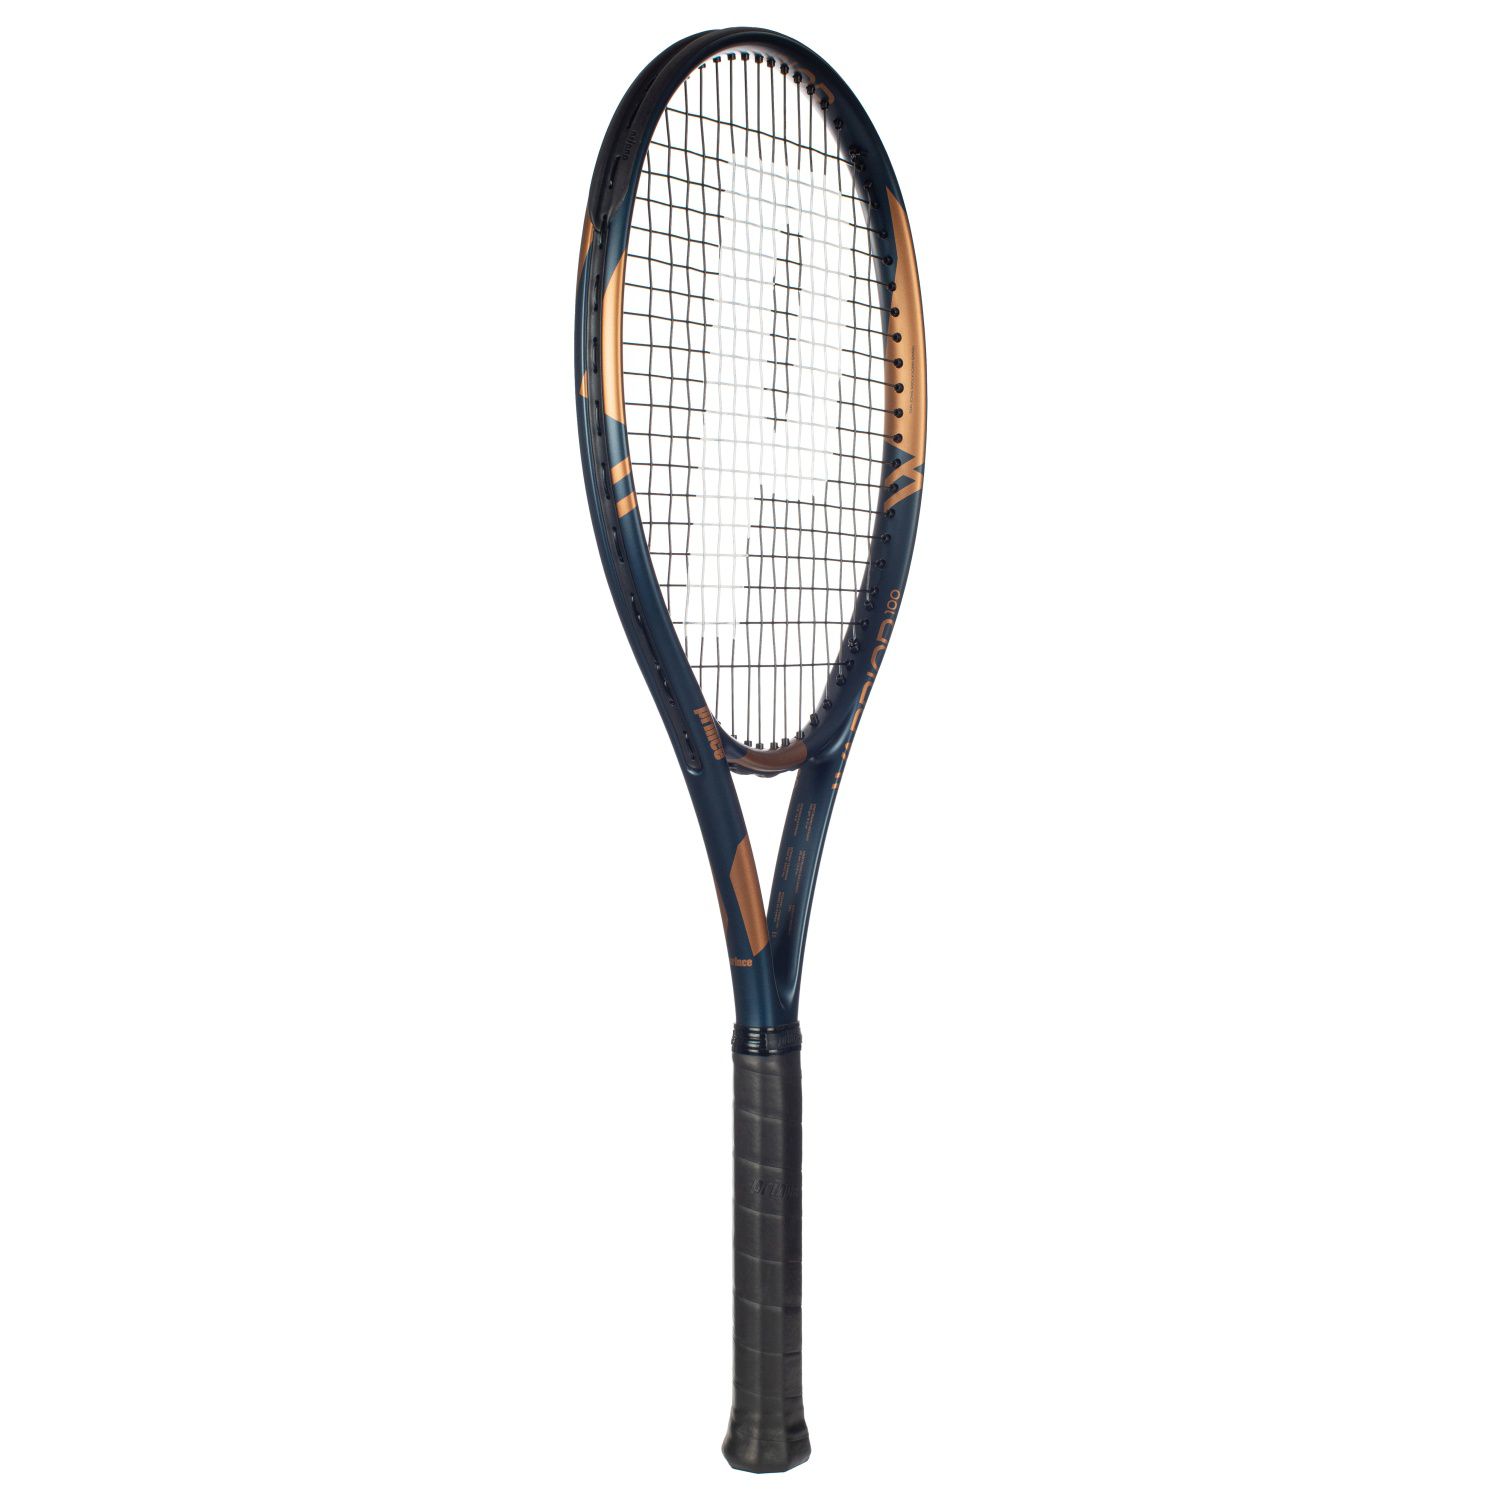 Raqueta De Tenis Prince Warrior 100 265 G (encordada Y Con Funda) - multicolor - 